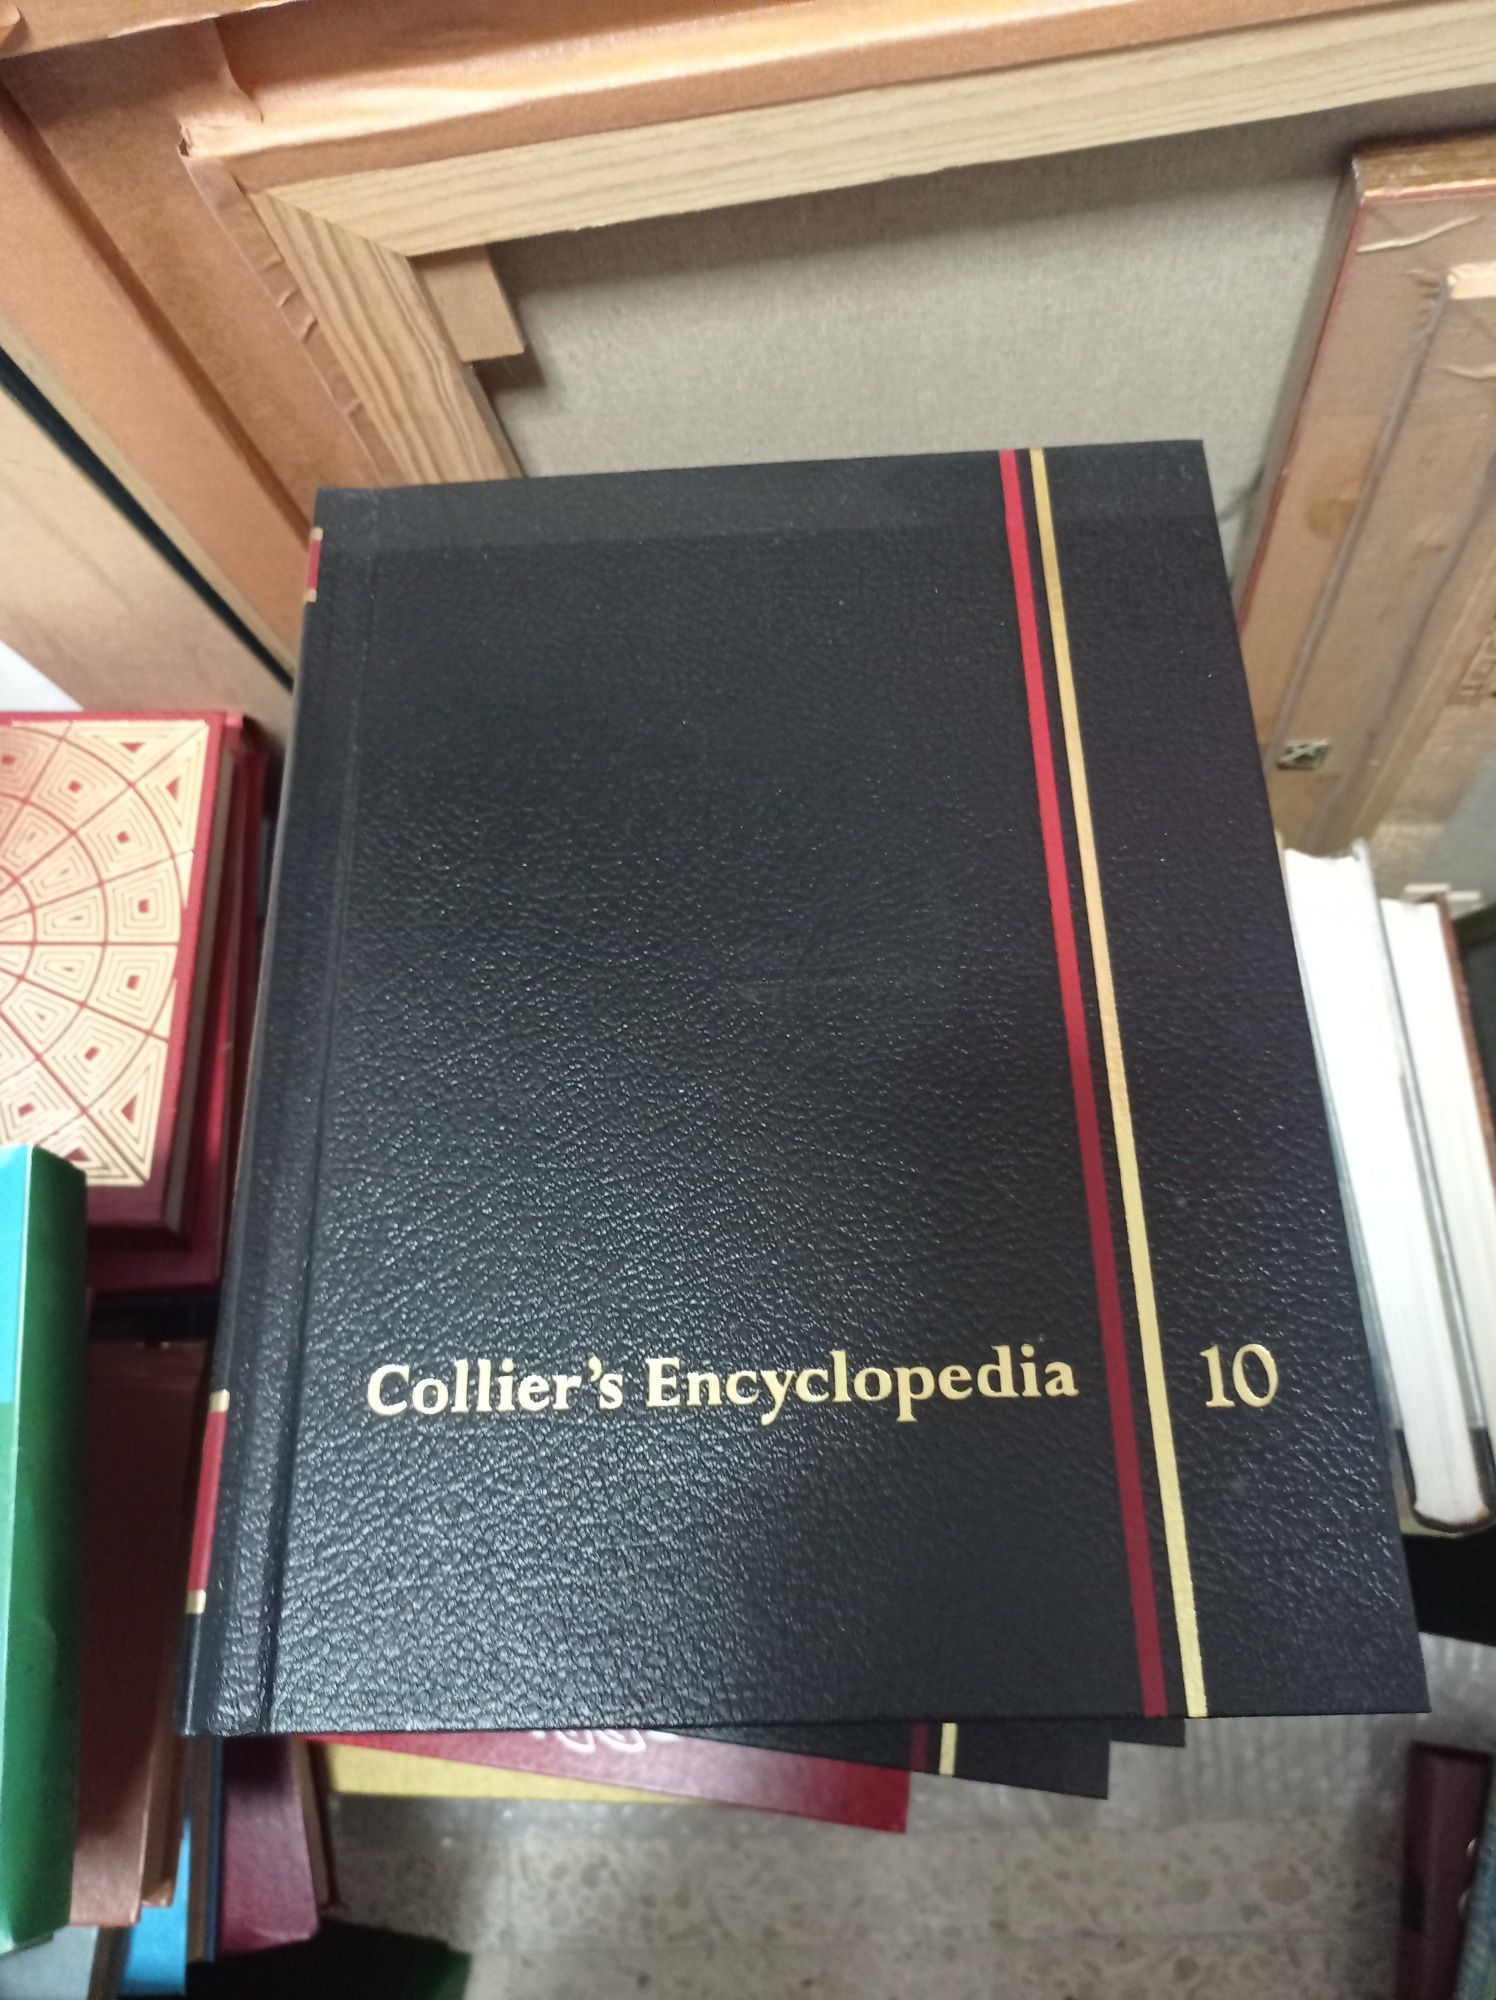 Enciclopédia Collier's e Collier's Junior Classics